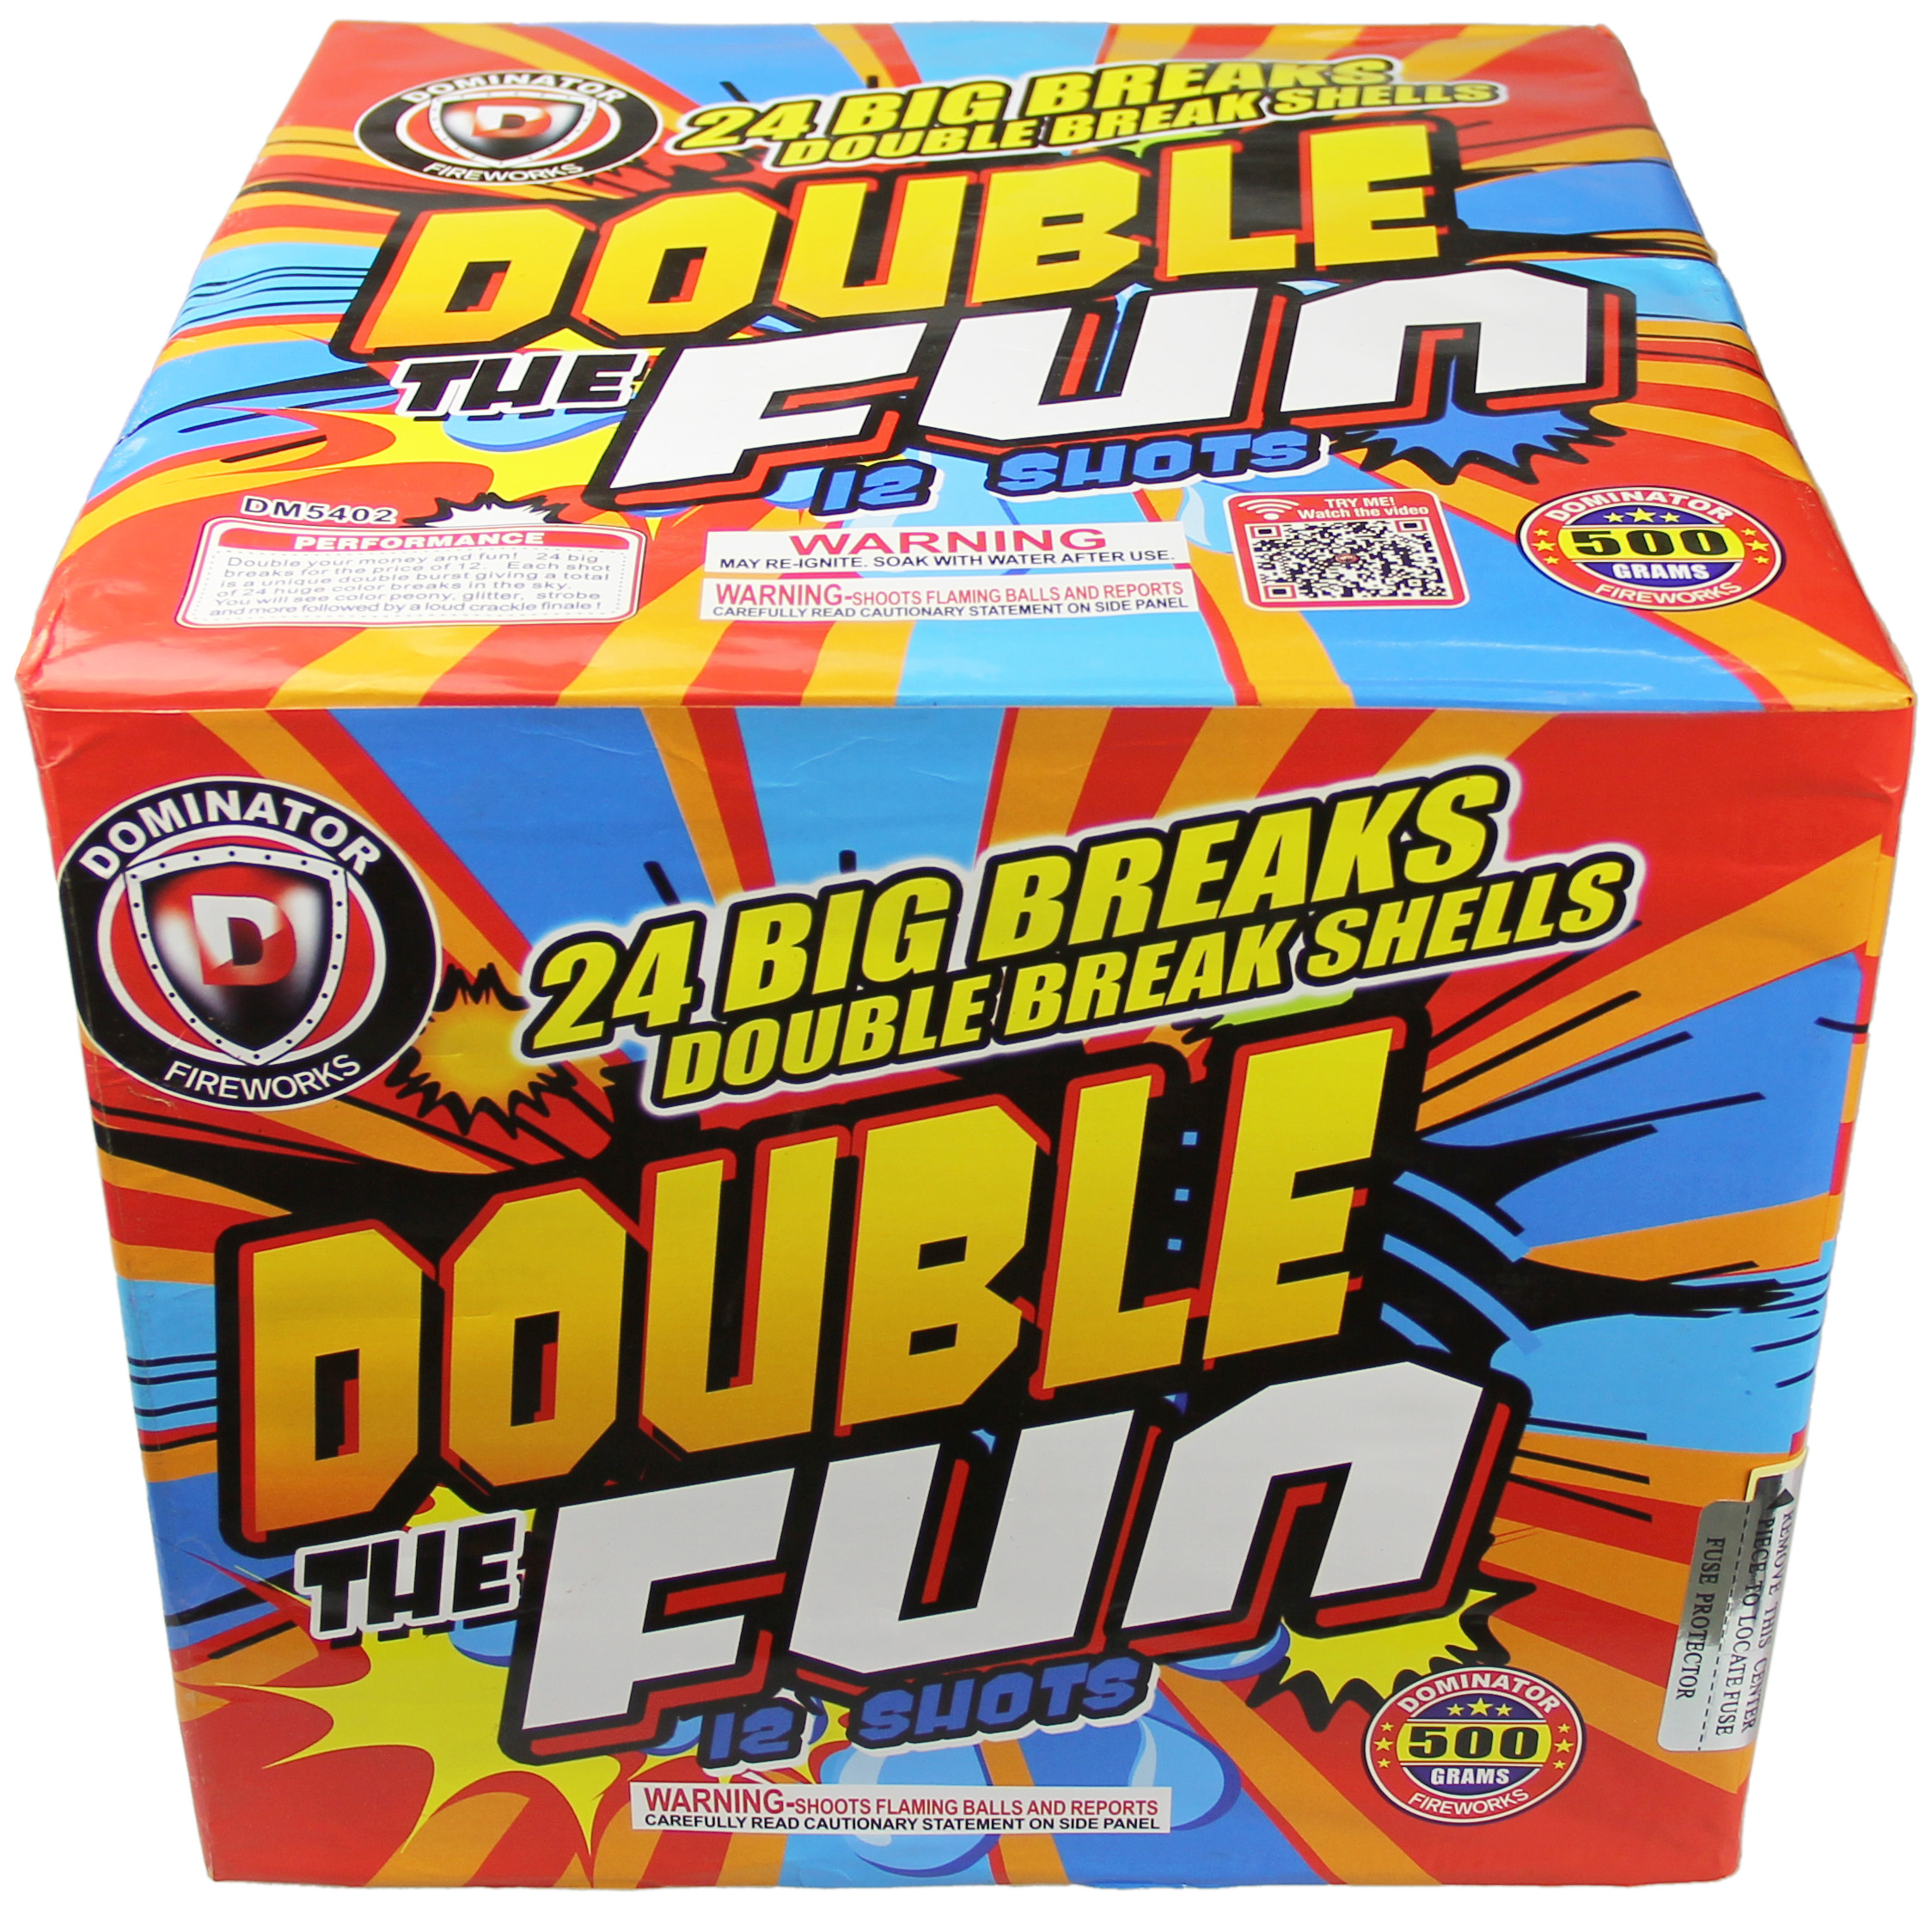 Double The Fun - 24 Breaks (Double Breaks)